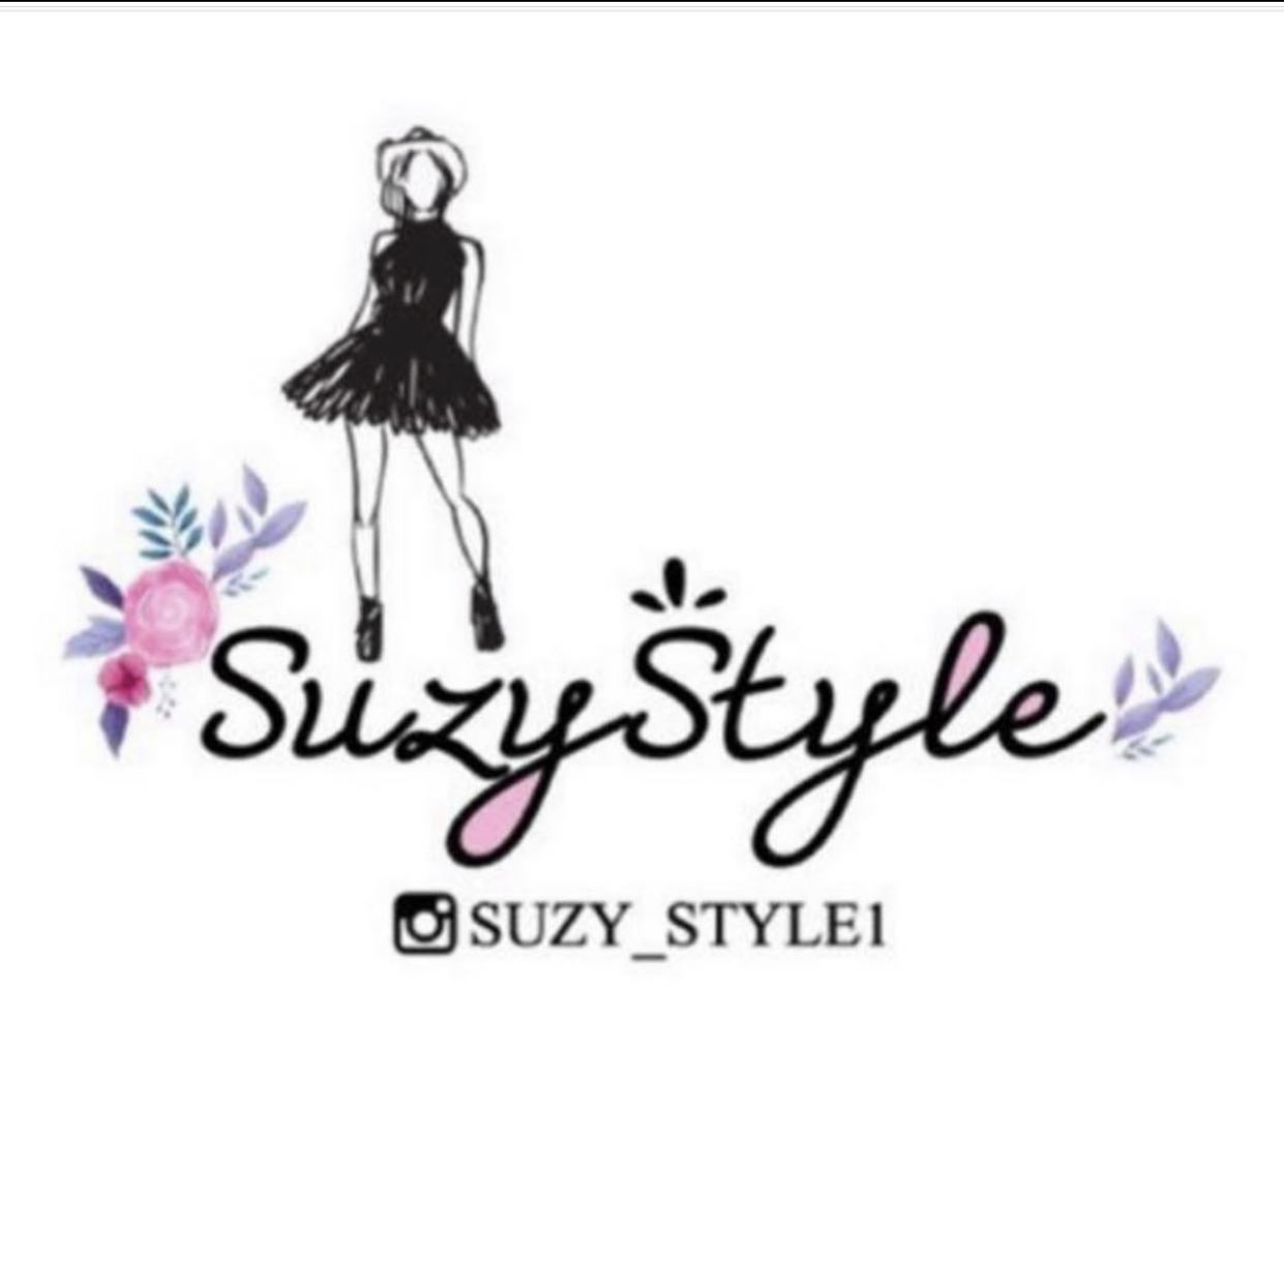 Suzy style